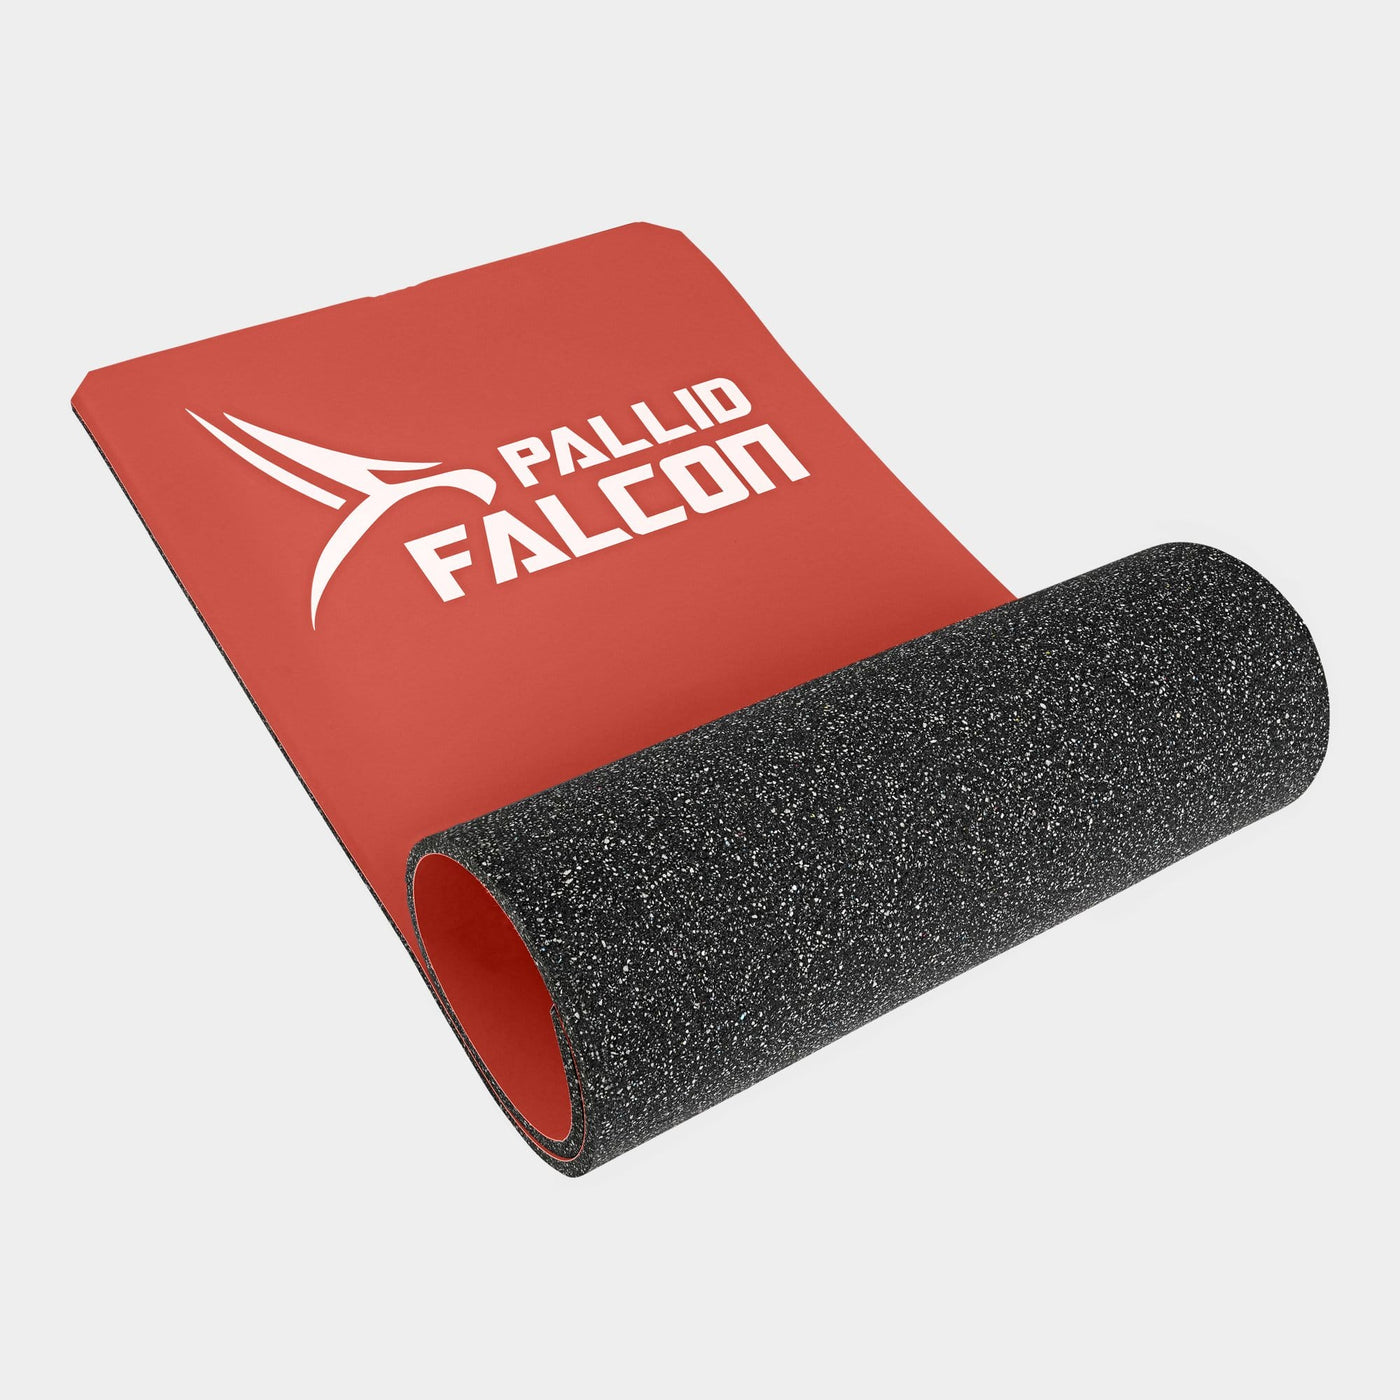 rote rutschfeste gymnastikmatte impact advanced workout system von pallid falcon für seilspringen und bodyweight training